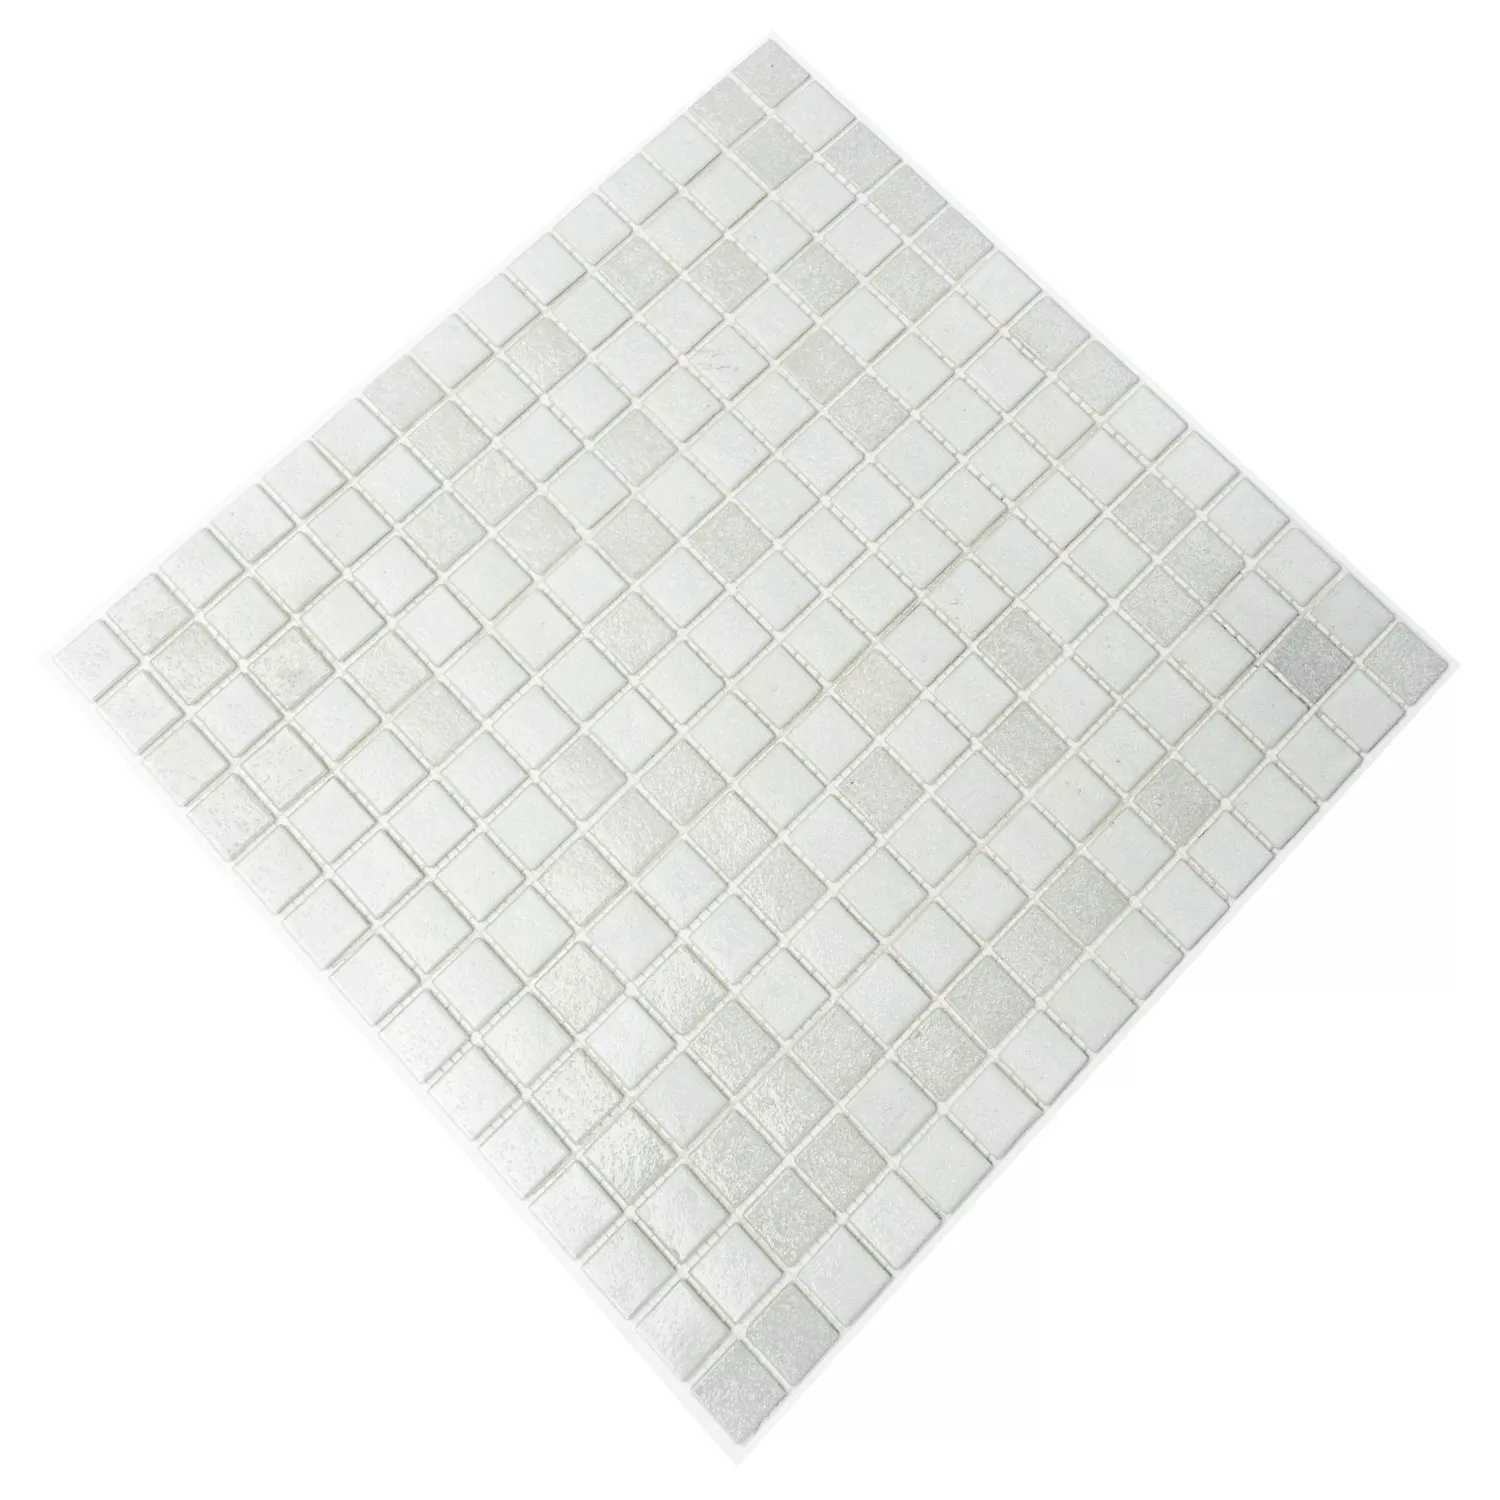 Mosaico De Vidro Azulejos Branco Mix